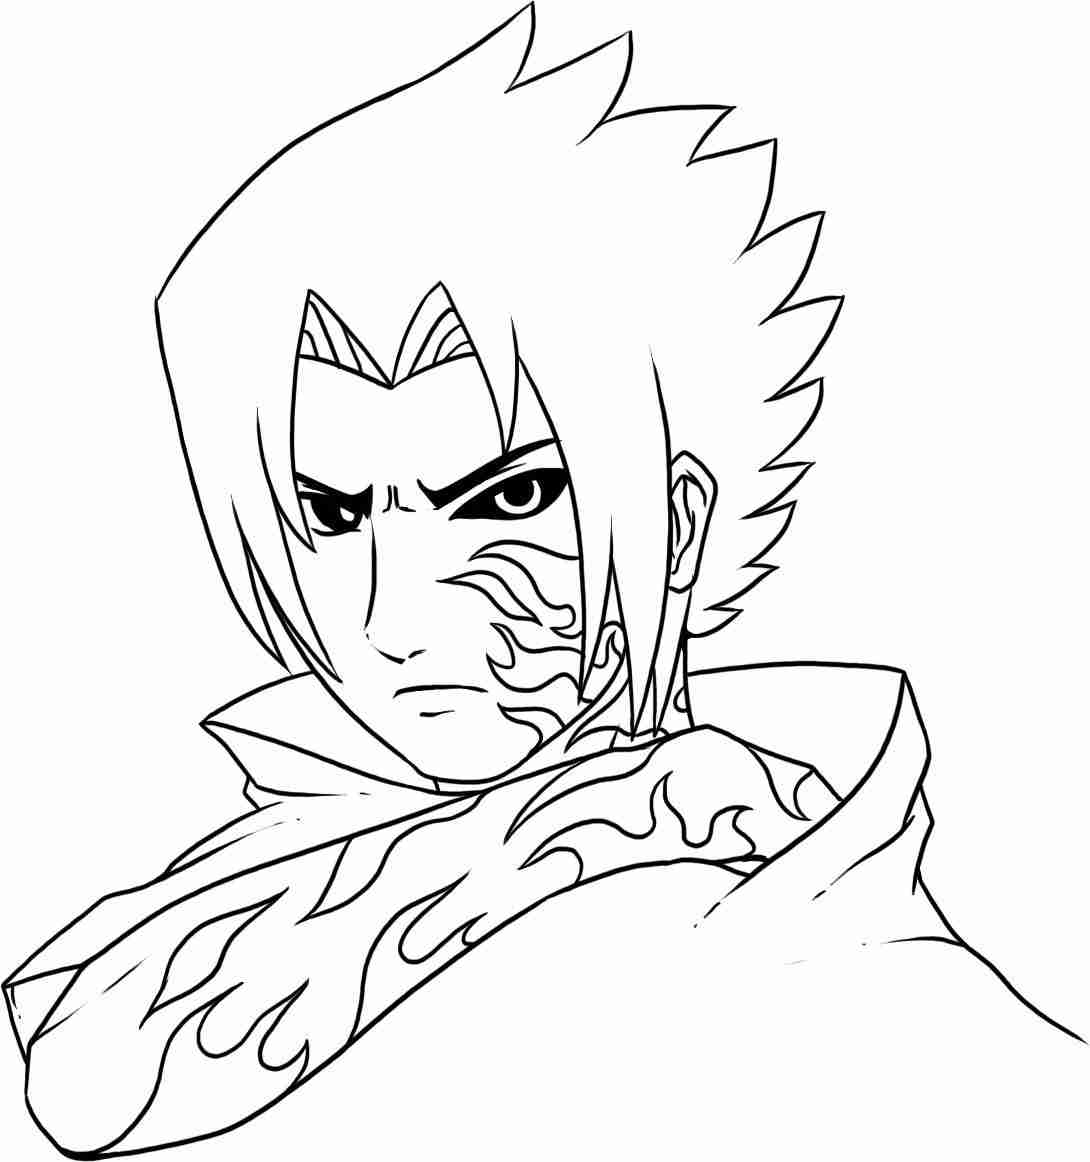 Sasuke a rempli une moitié de marque de malédiction spéciale sur son visage et son bras Coloriage